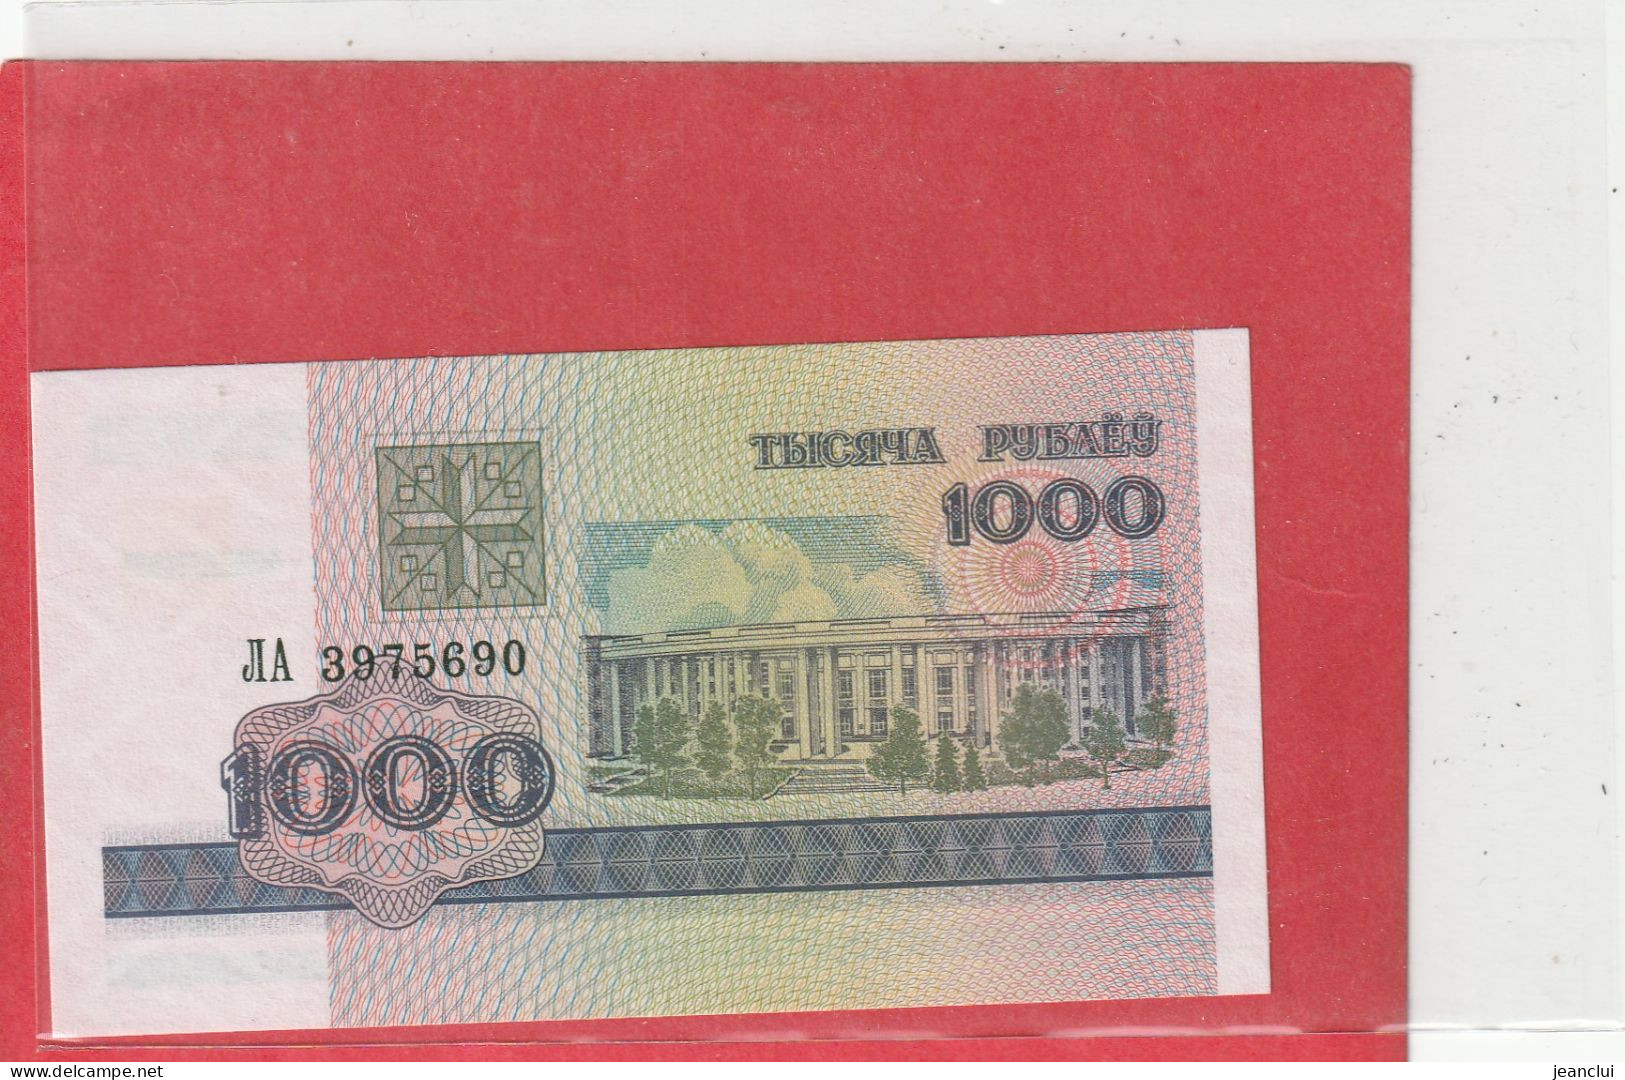 BELARUS NATIONAL BANK  .  1.000 RUBLEI   . N° 3975690 .  1998     2 SCANNES  .  BILLET ETAT LUXE - Bielorussia